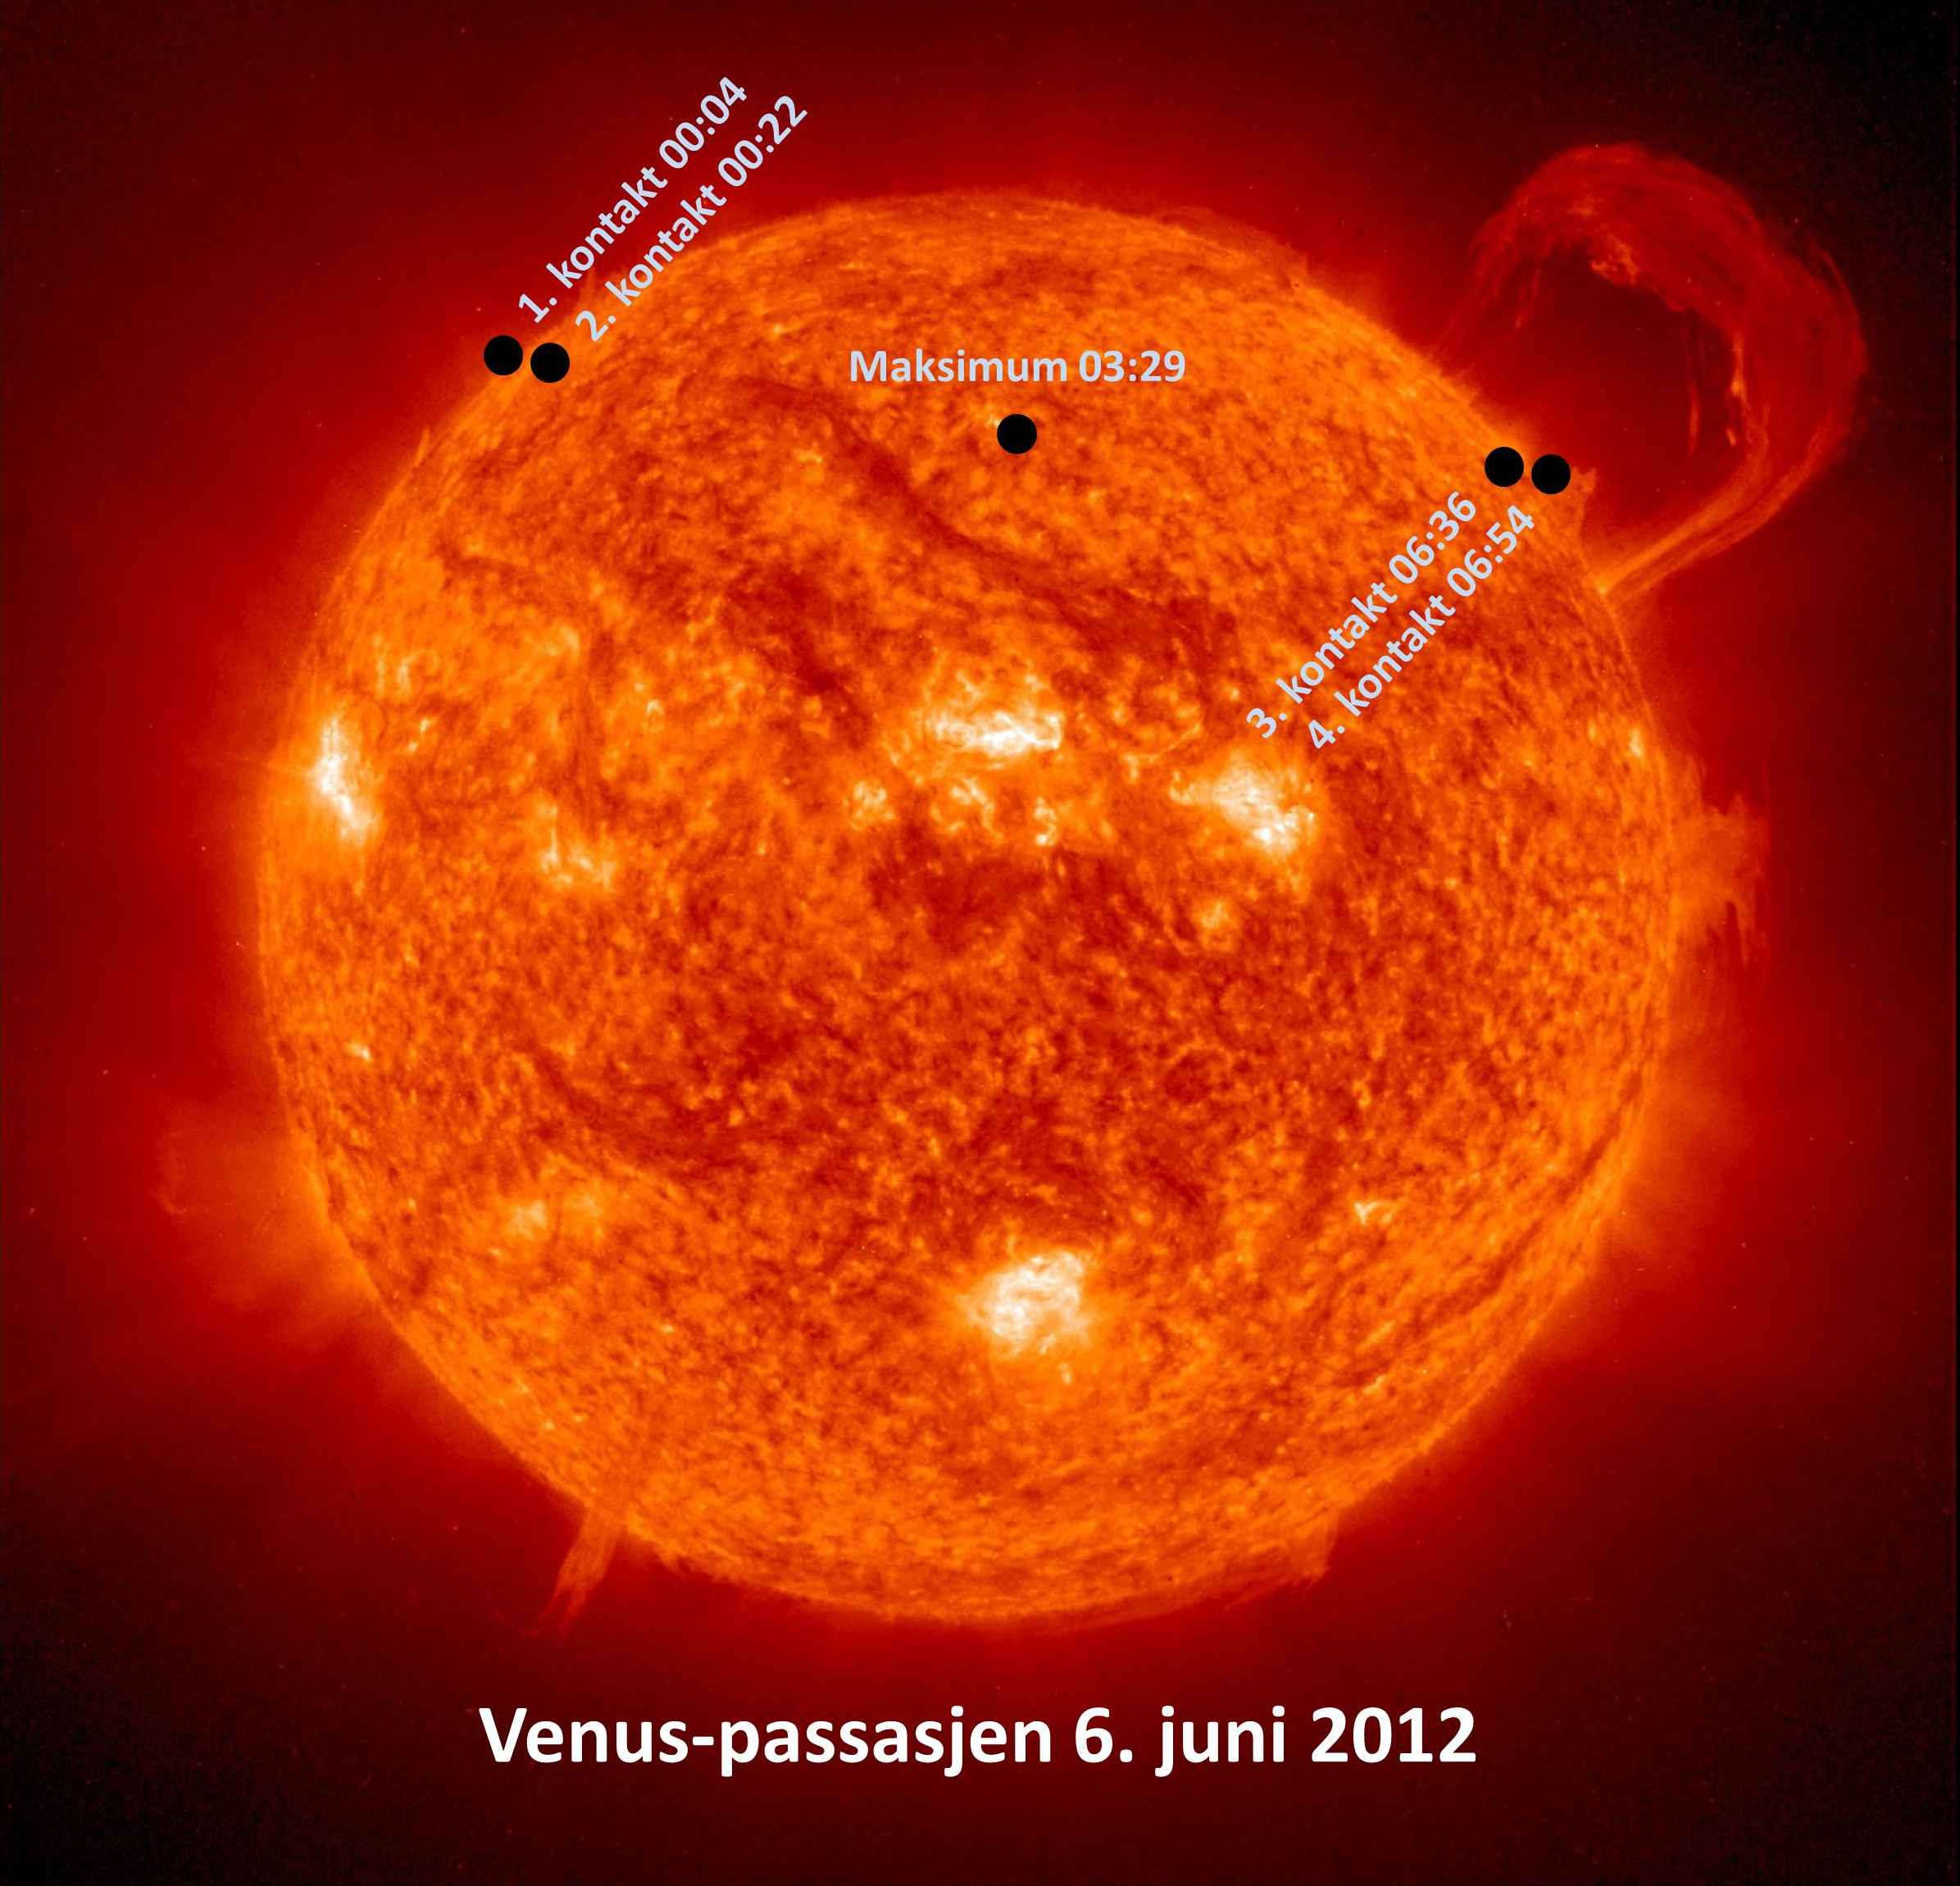 Venus-passasjen 6. juni 2012: I løpet av knappe 7 timer sklir planeter over solskiven. Foto: NASA, montasje: astroevents.no / Knut Jørgen Røed Ødegaard